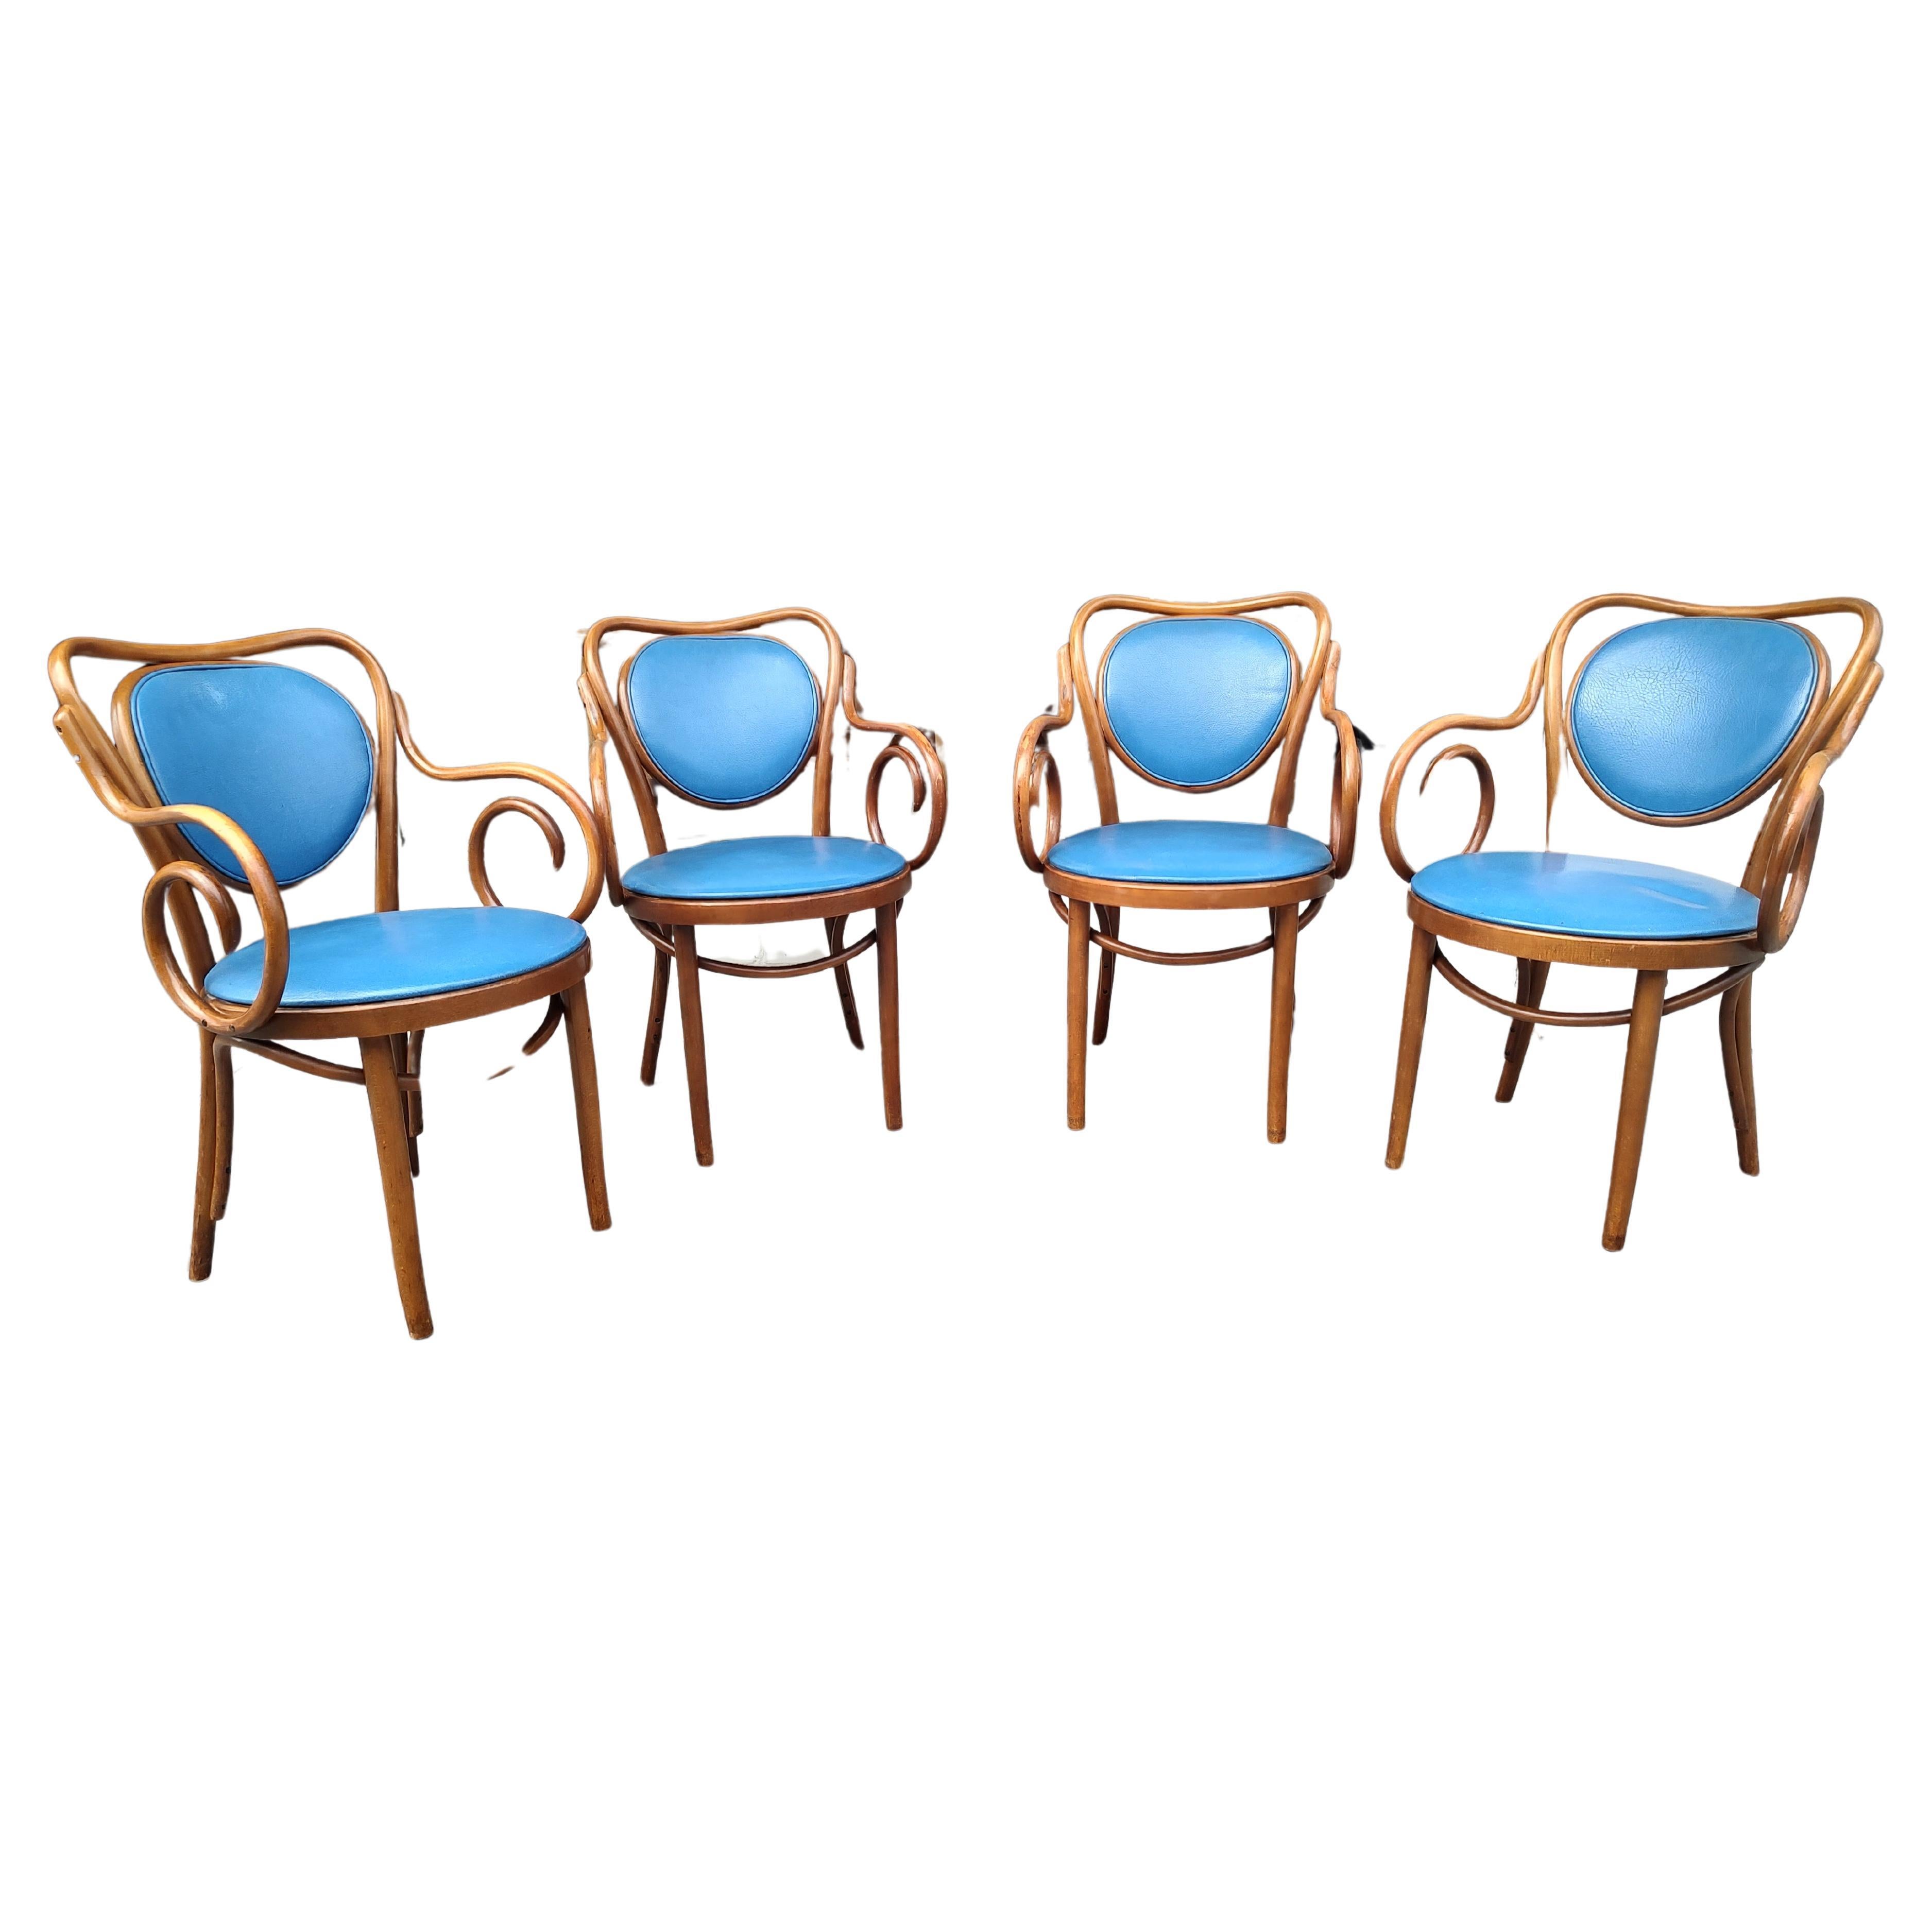 Fabuleux ensemble de 4 fauteuils de style Thonet en bois courbé. En excellent état vintage avec une usure minimale. Le vinyle bleu est une couleur vibrante et se change facilement. Les chaises sont également très confortables.